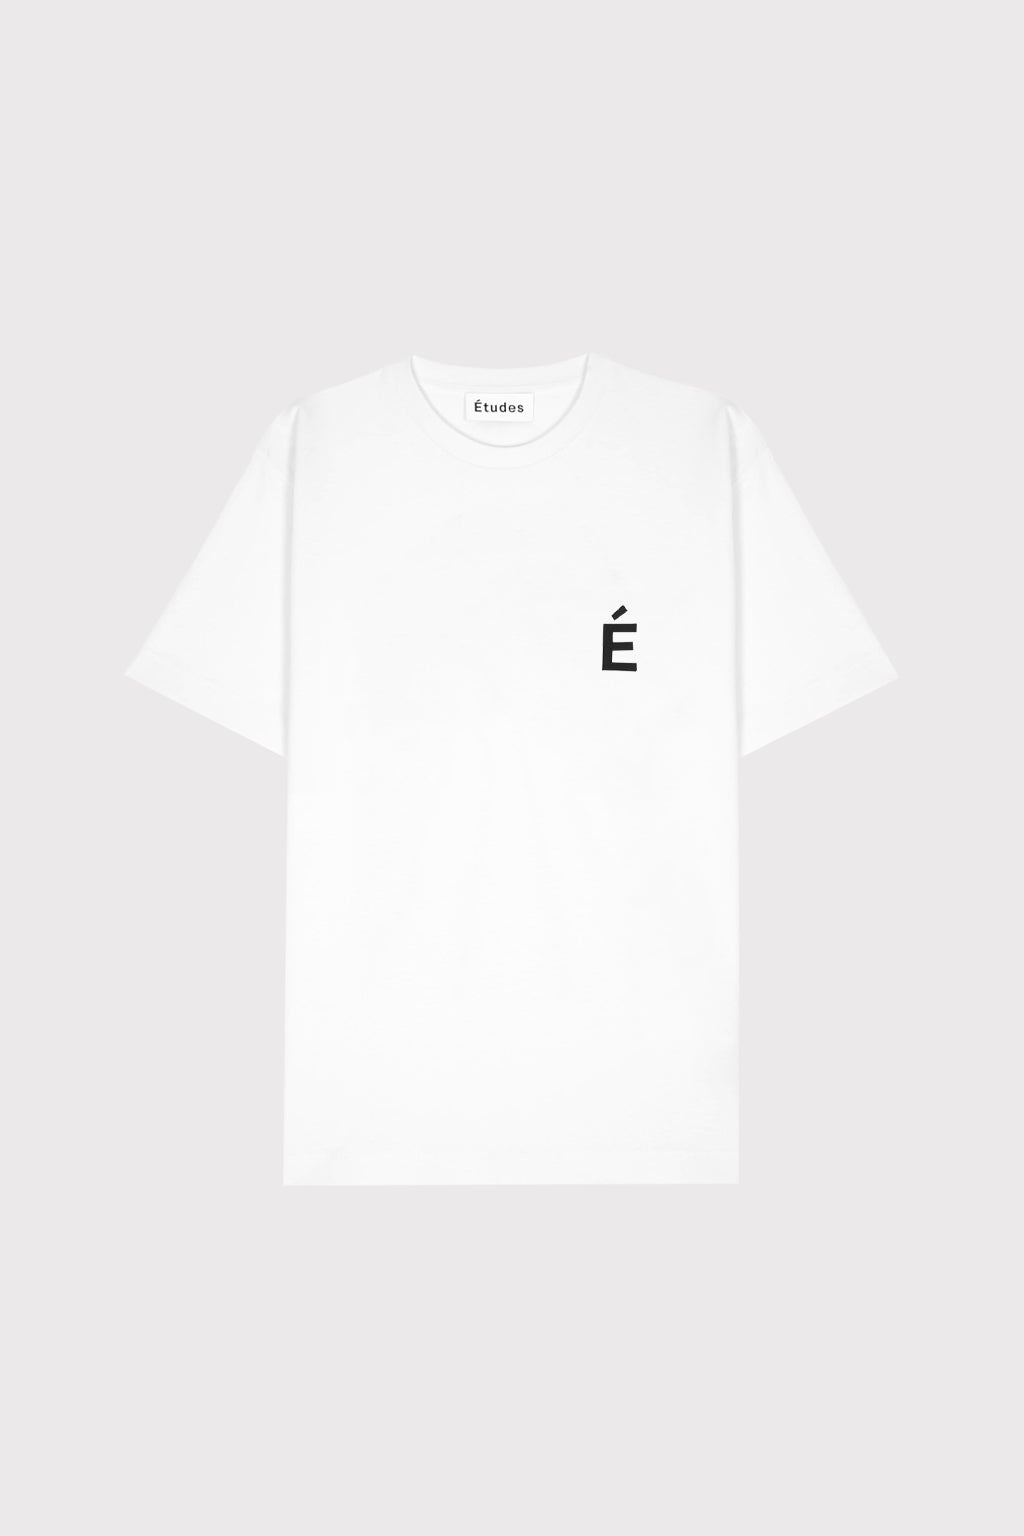 Études WONDER PATCH WHITE T-shirt 2